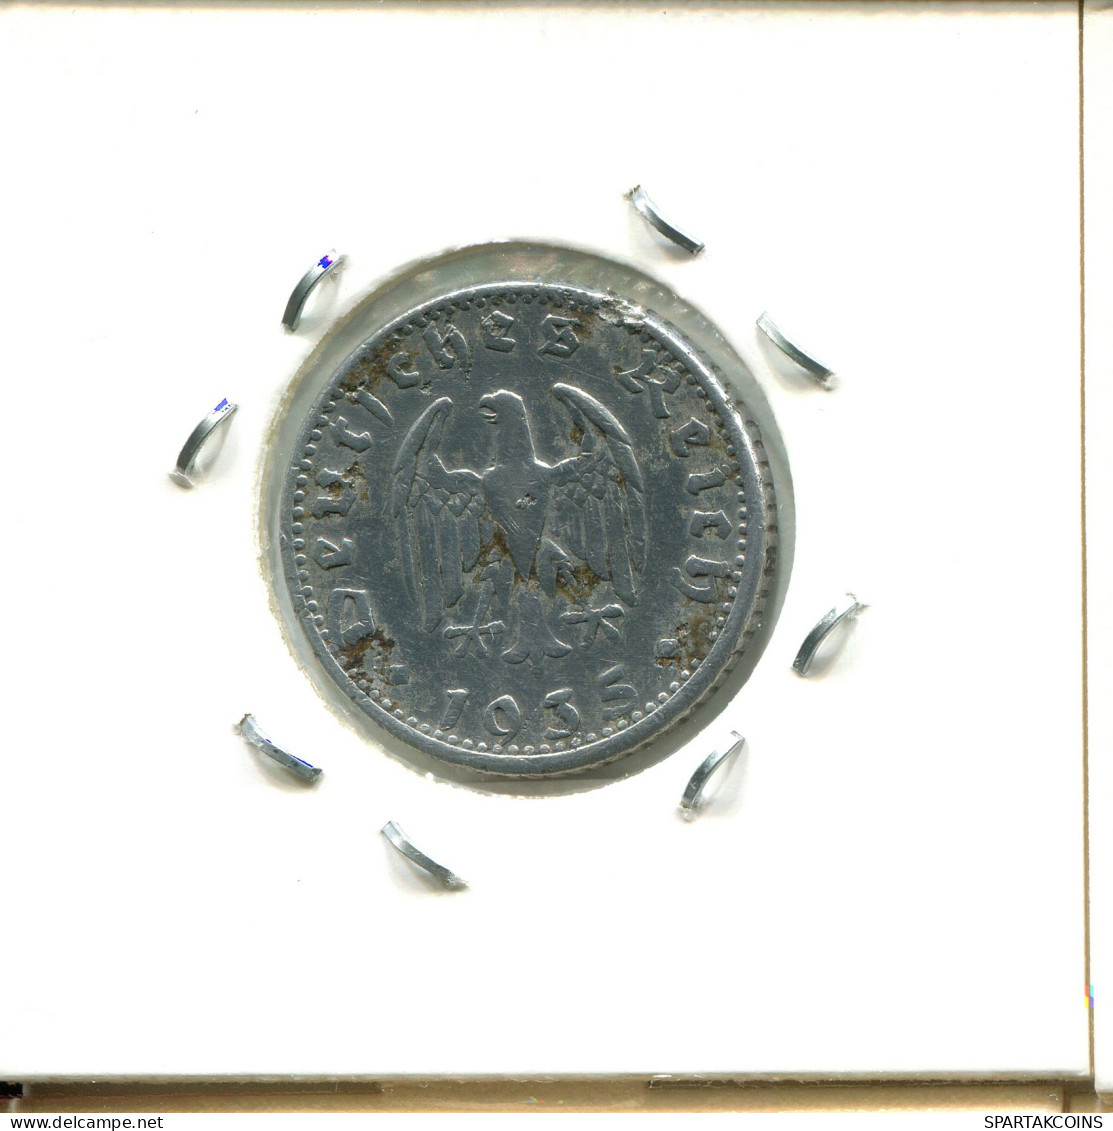 50 REICHSPFENNIG 1935 G ALEMANIA Moneda GERMANY #DA428.2.E - 50 Reichspfennig